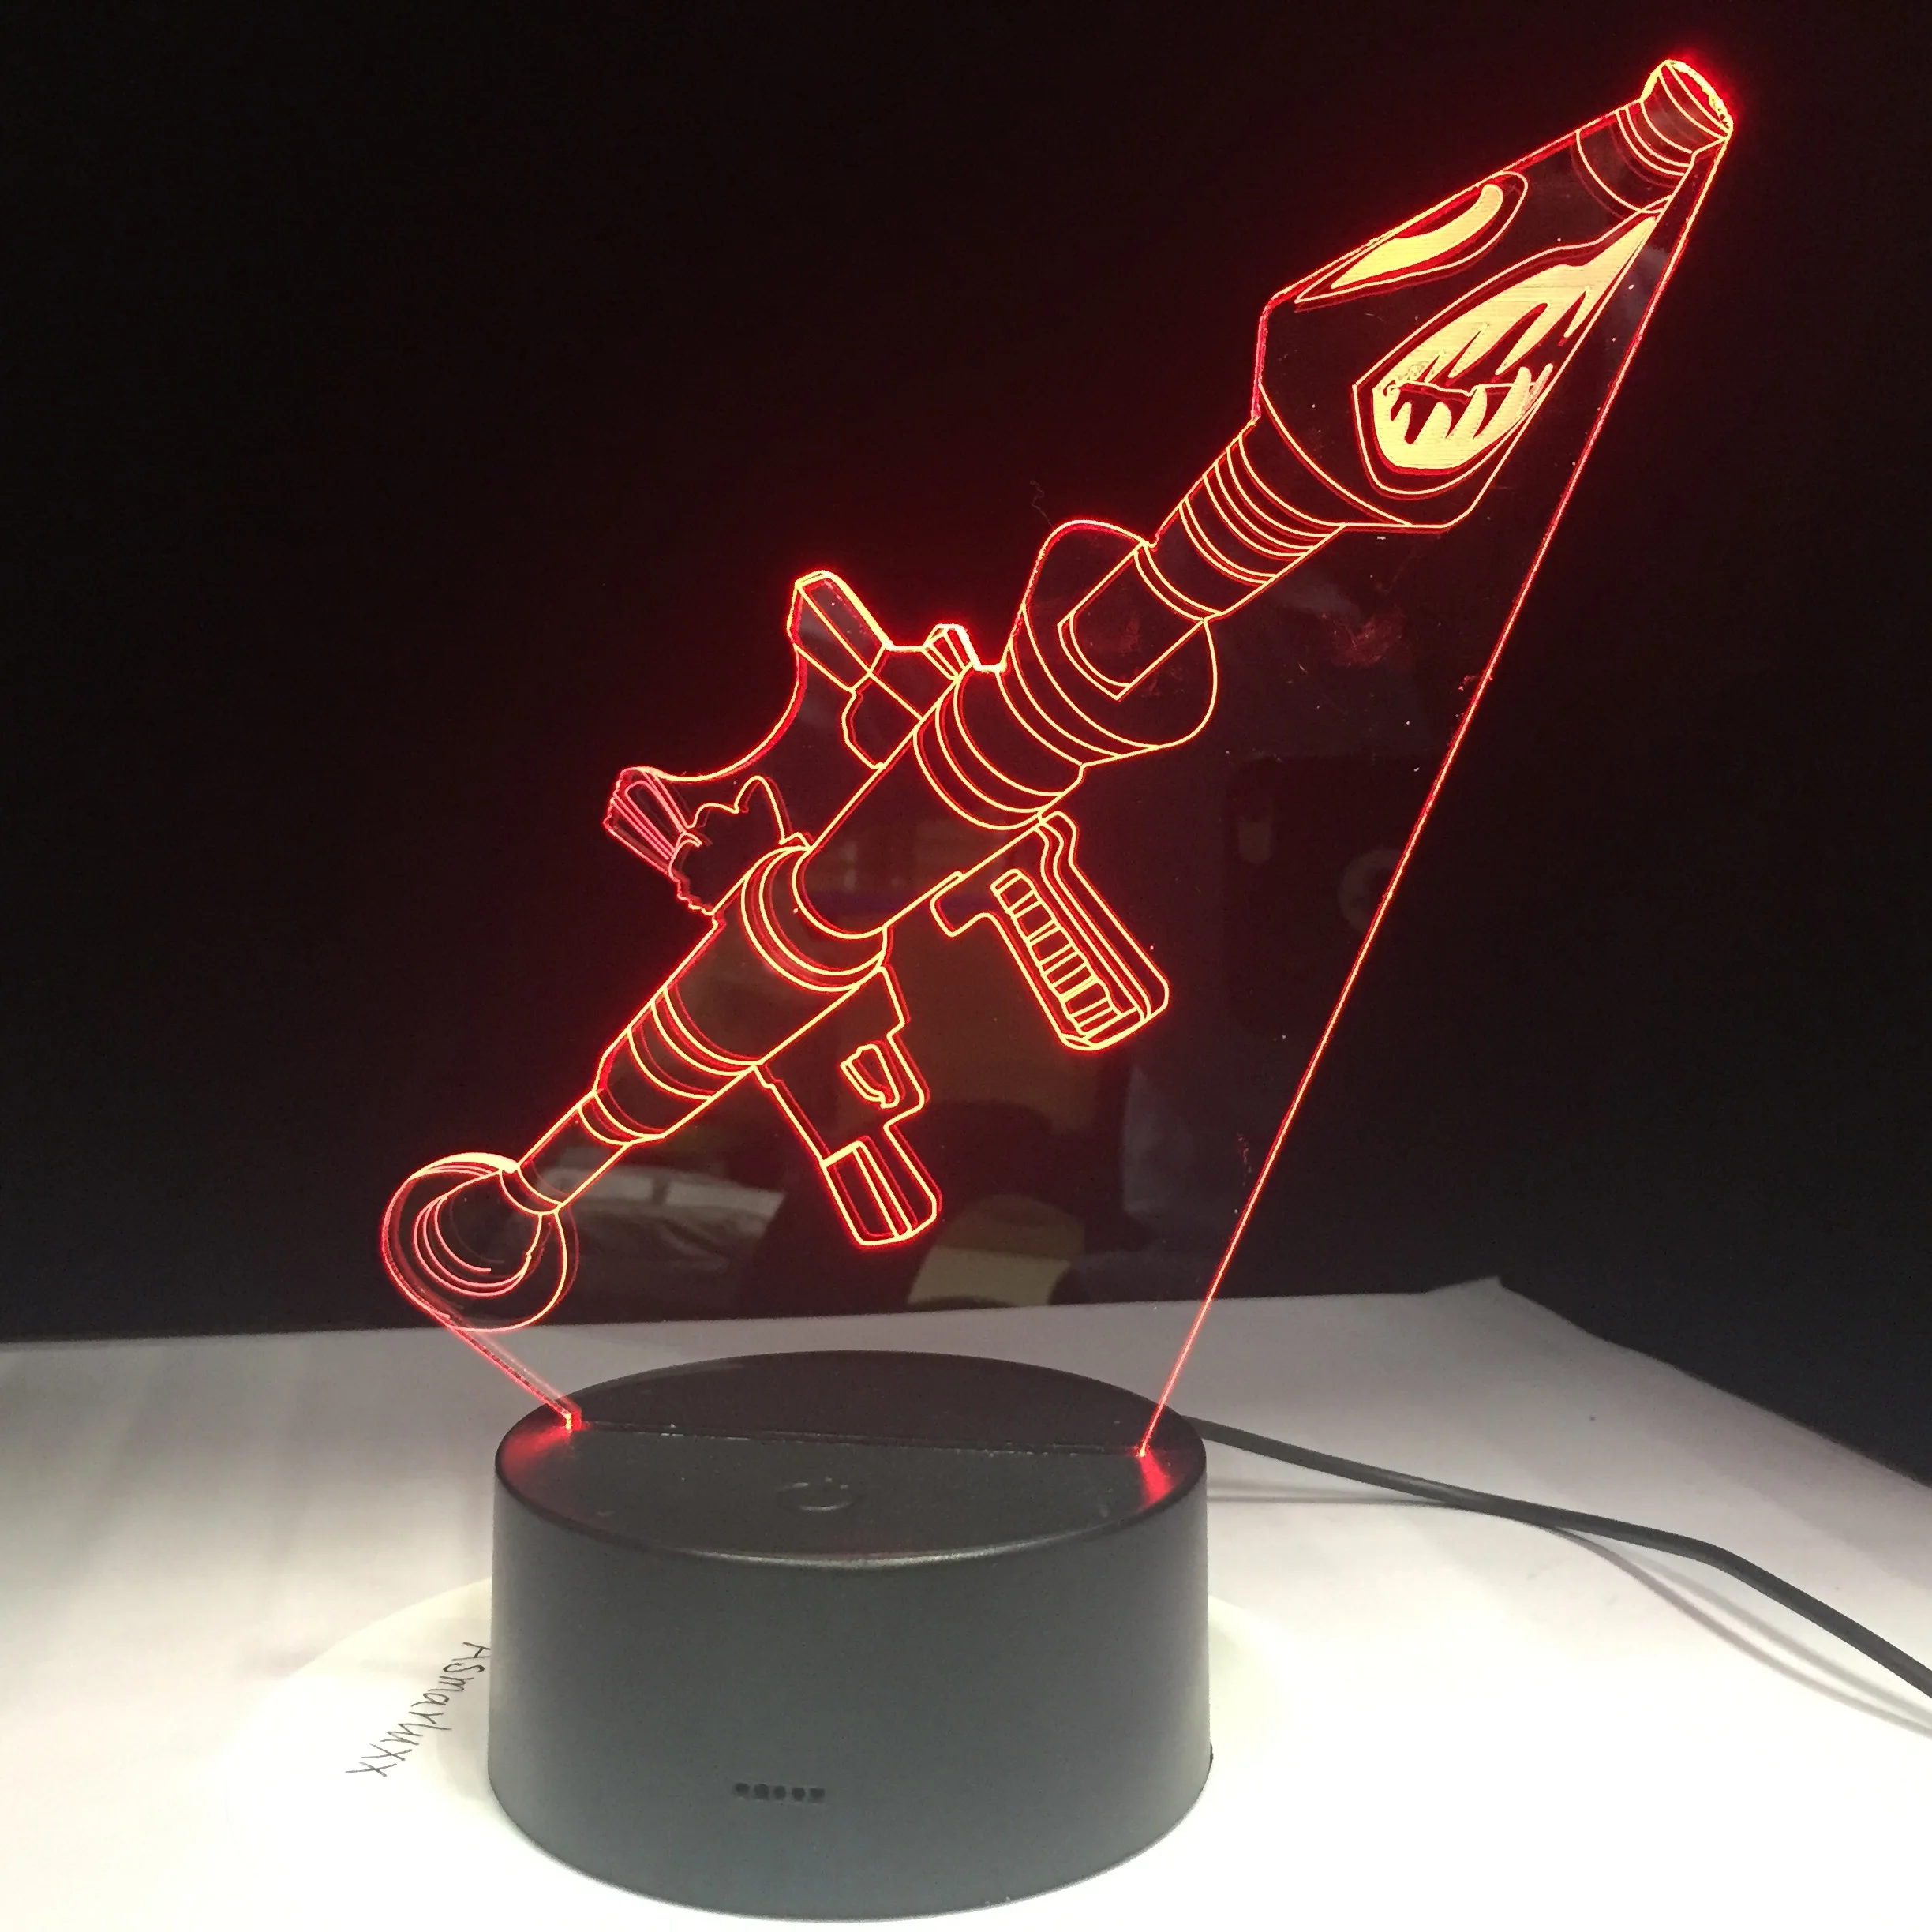 Источник пистолет Тип 3D Led 3D ночник 7 цветов сенсорный пульт дистанционного управления 3d видение настольная лампа оригинальная подарочная